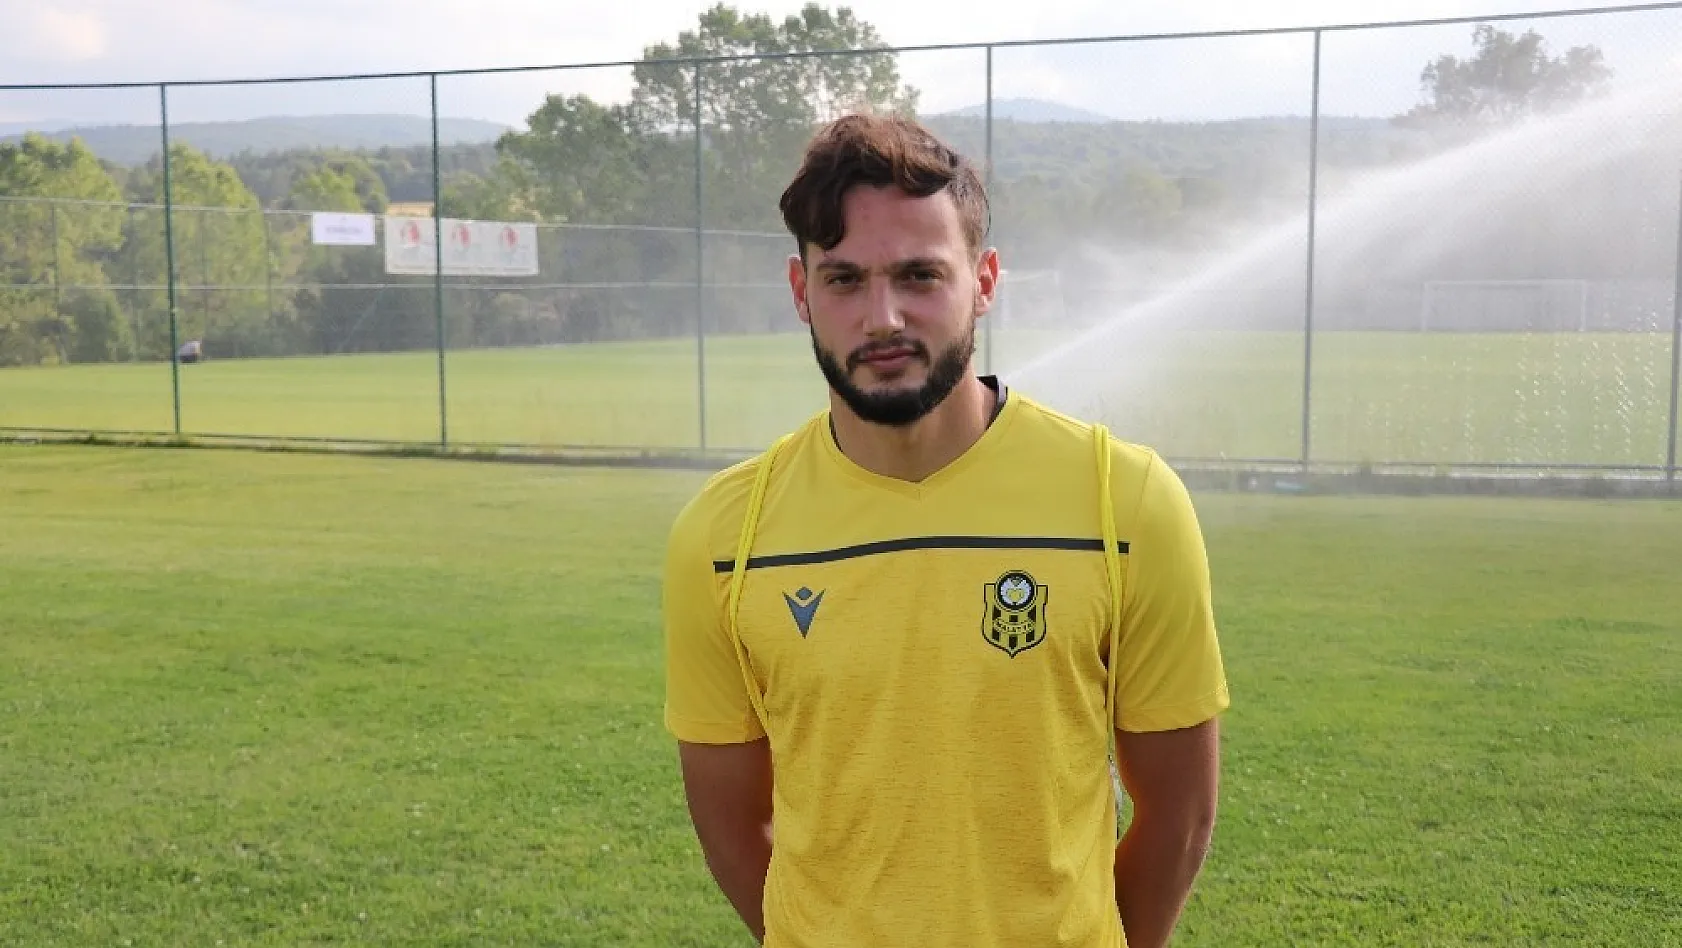 Yeni Malatyaspor'da genç futbolcu Özer Özdemir, Sergen Yalçın'ın gözüne girmeyi başardı 